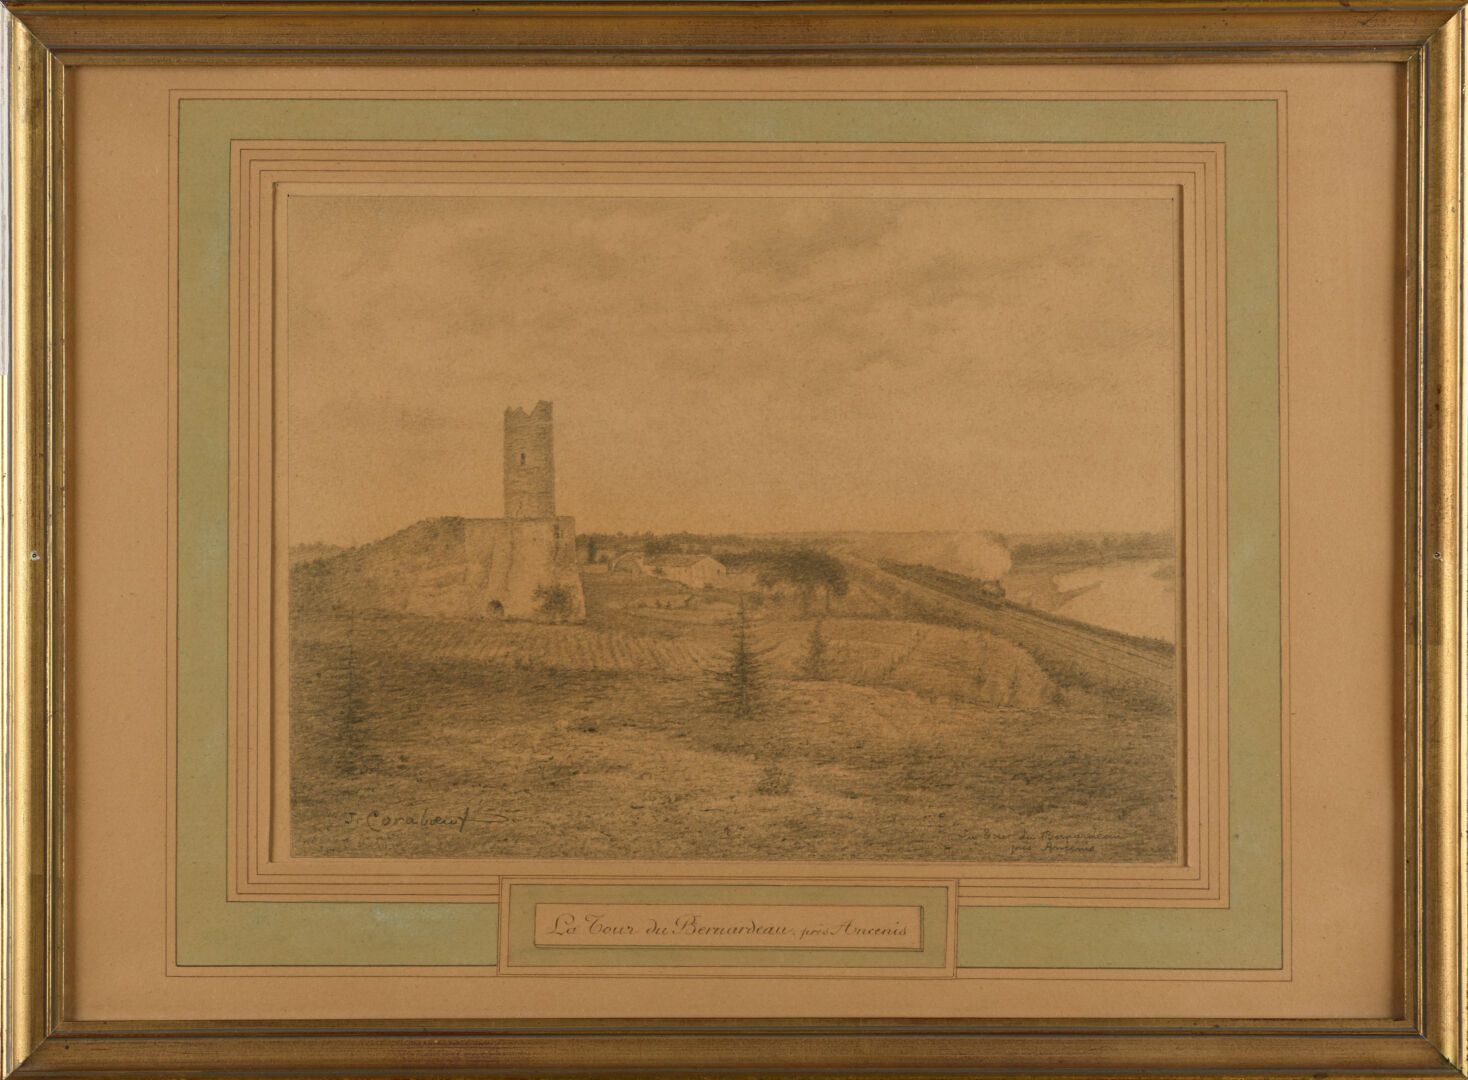 Null Jean CORABOEUF (1870-1947)
La Tour du Bernardeau près Arcenis
Dessin à la m&hellip;